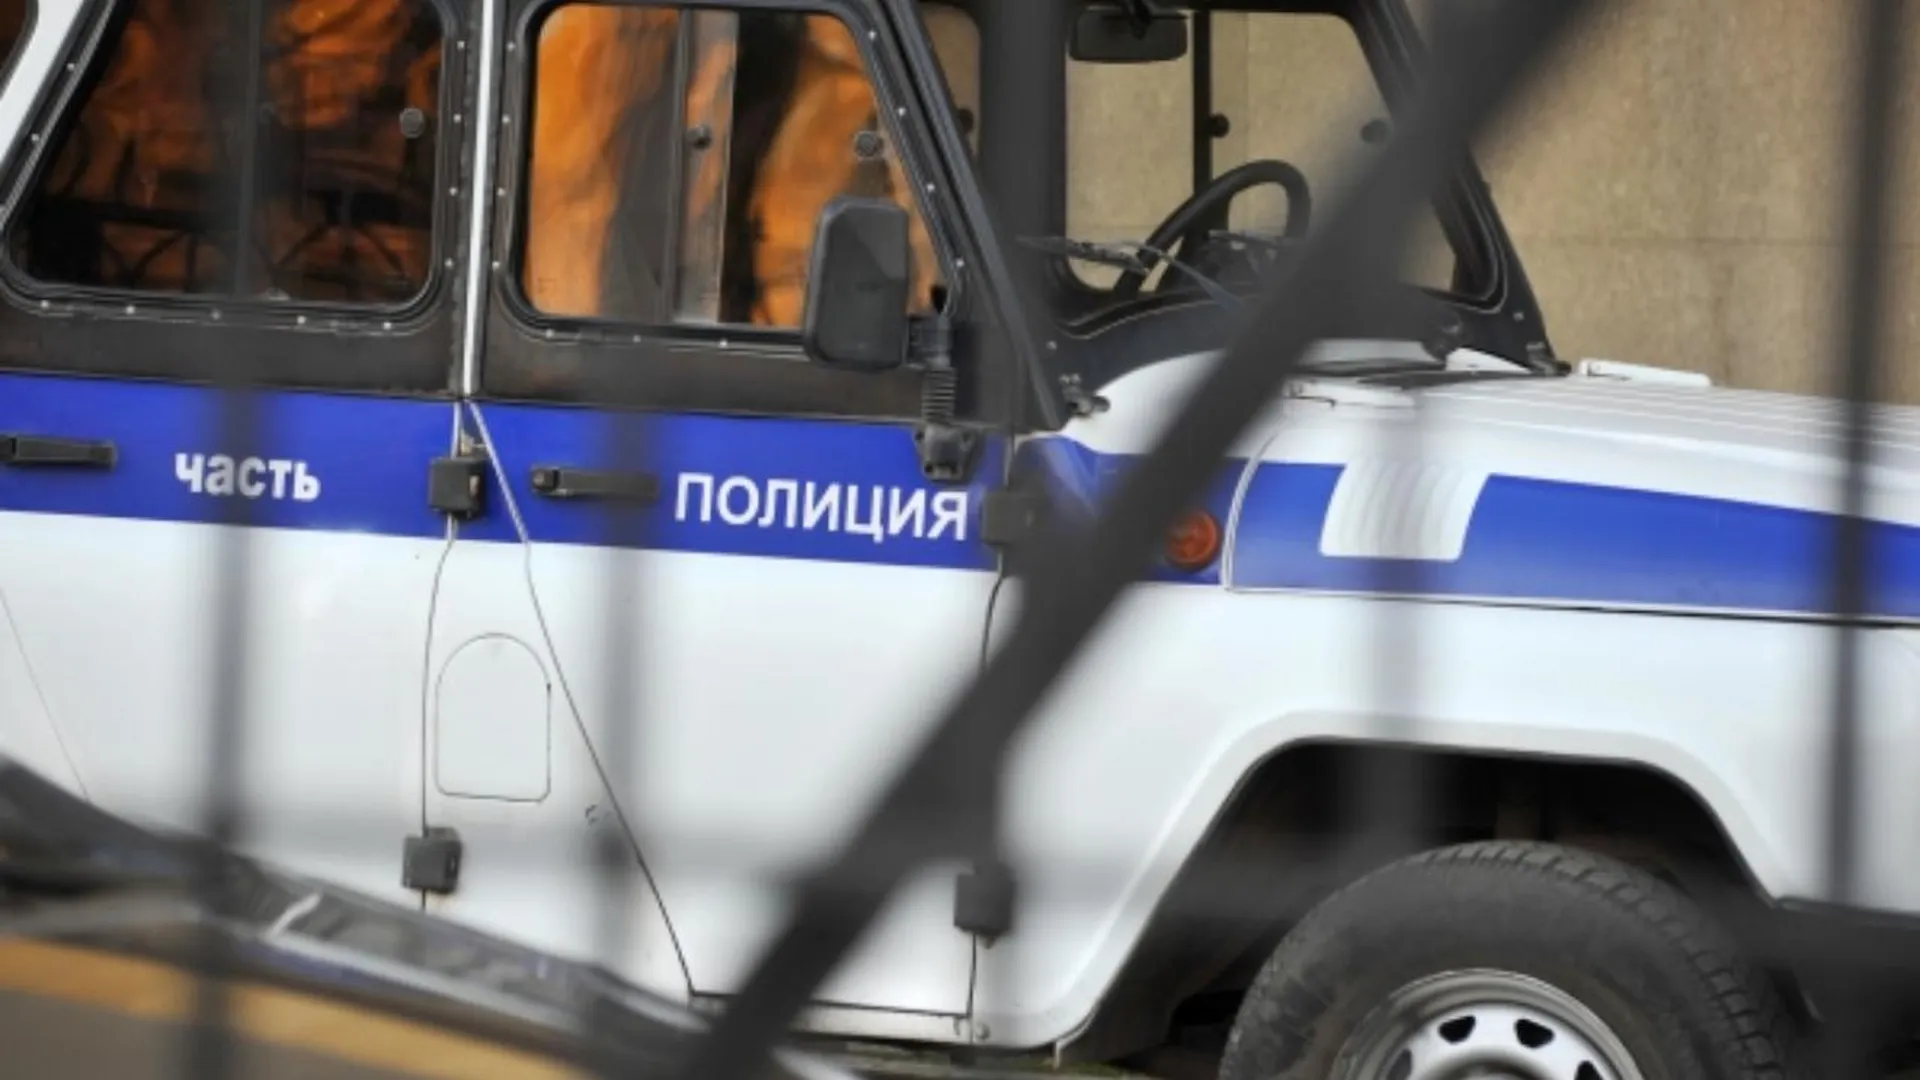 На иностранцев, которые избили пенсионера в Щелково, завели уголовное дело